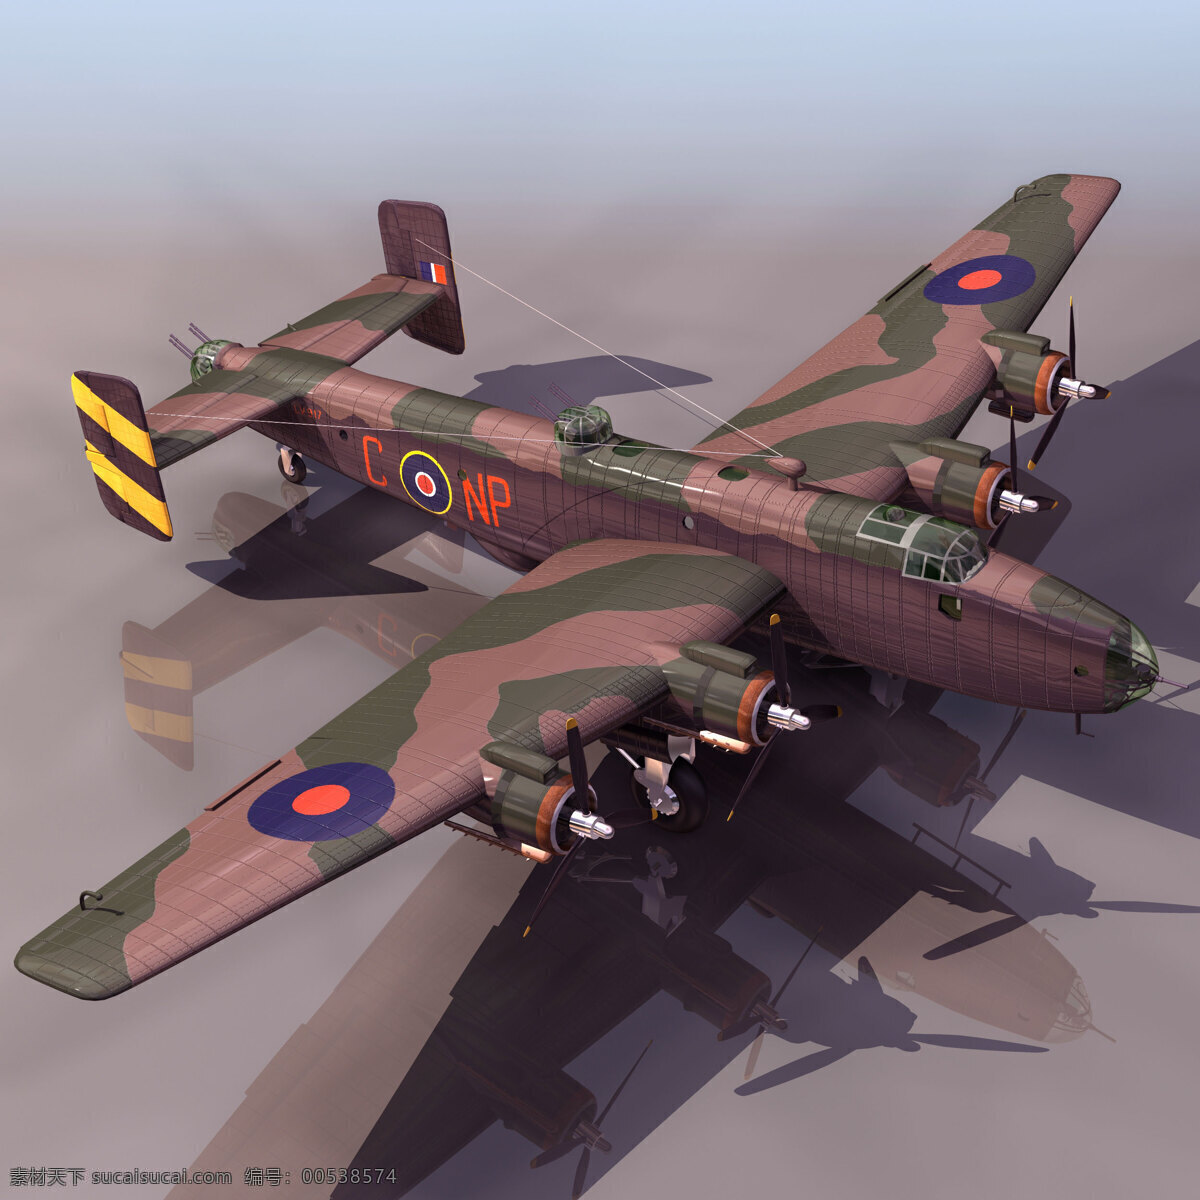 飞机模型 halifax 军事模型 空军武器库 3d模型素材 其他3d模型